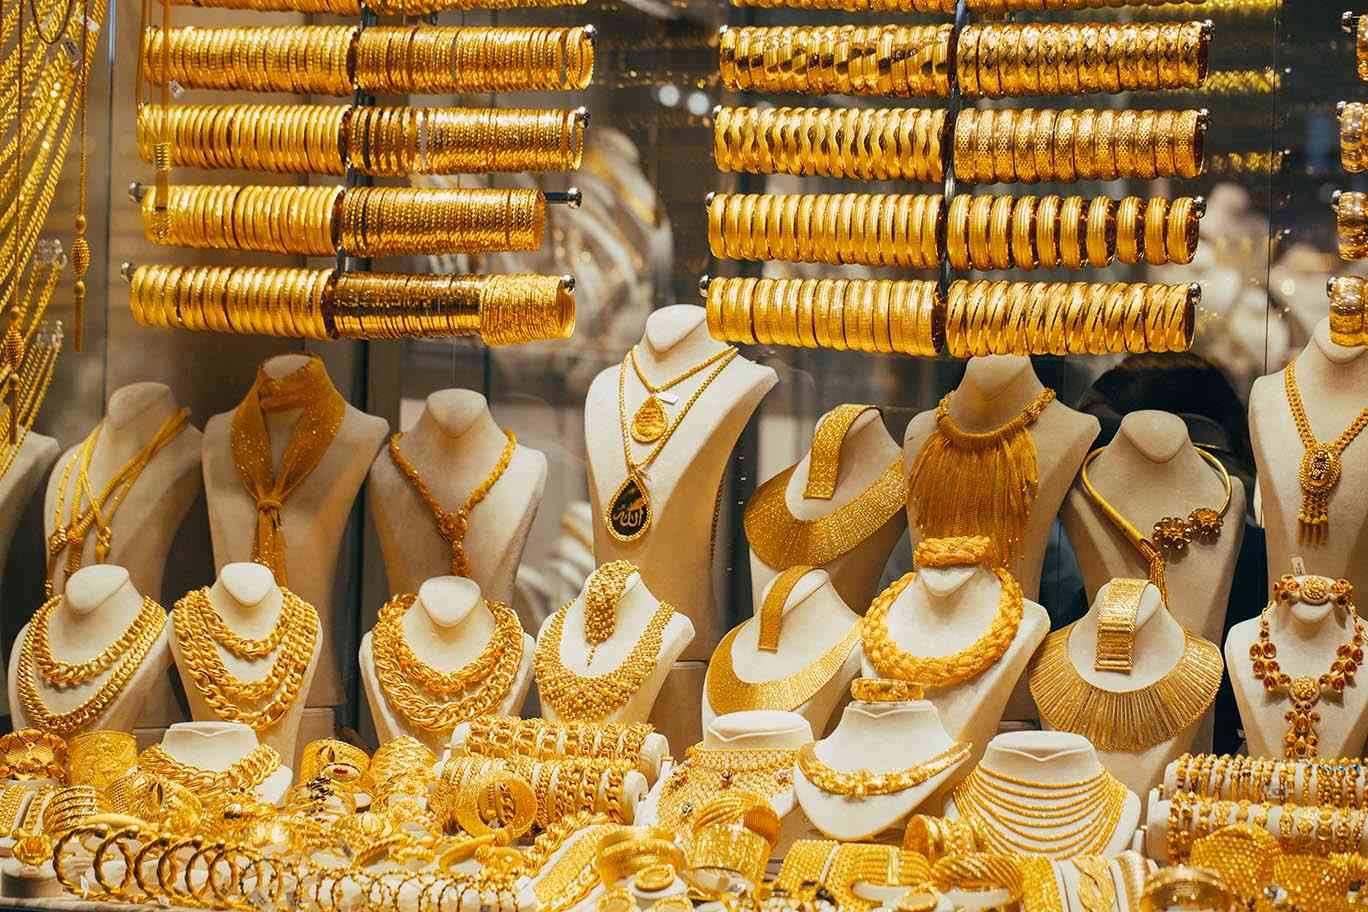 محال لبيع الذهب في مصر